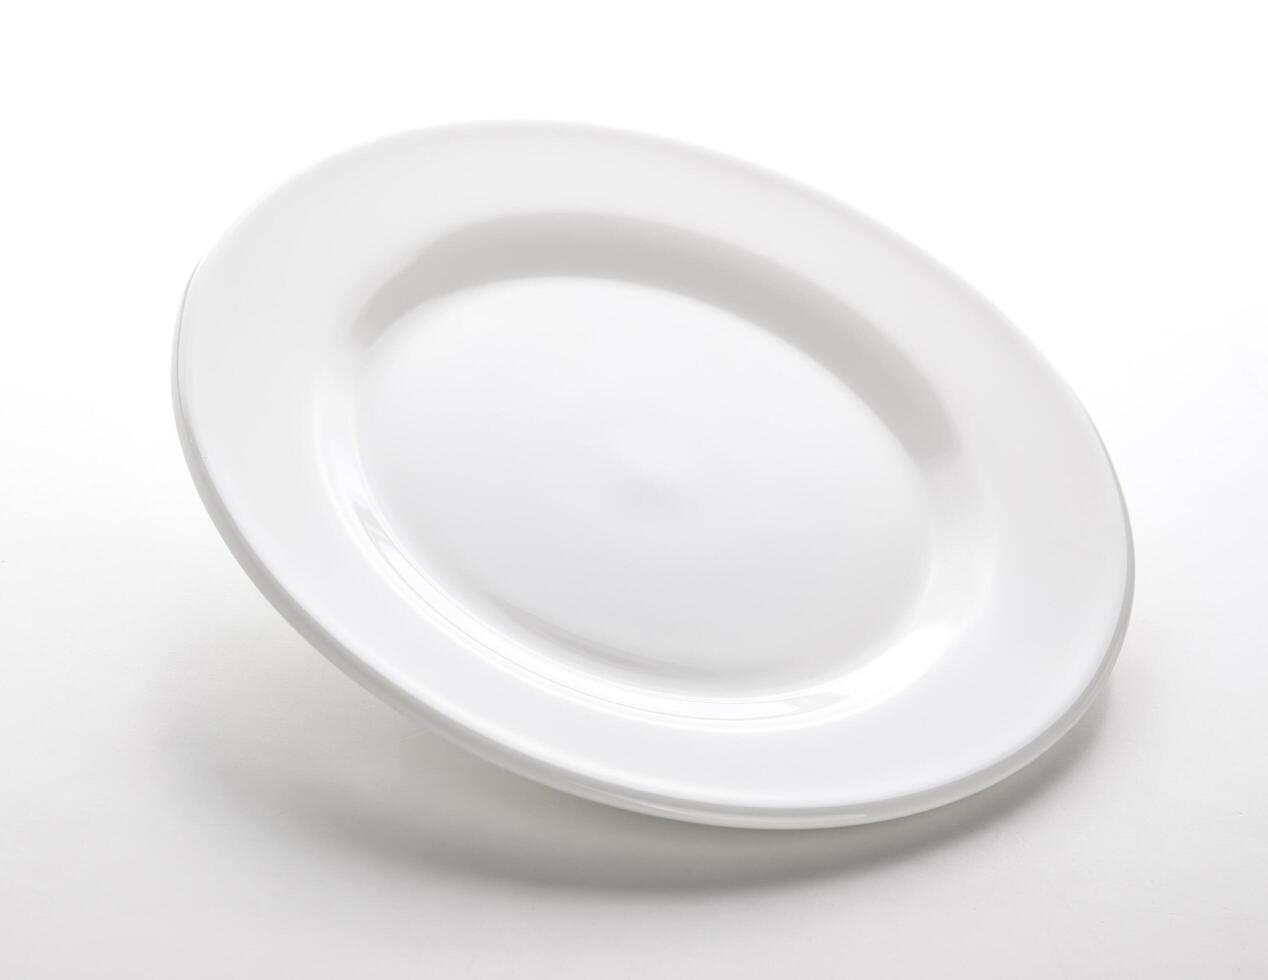 blanco plato aislado en blanco mesa, vacío plato modelo foto